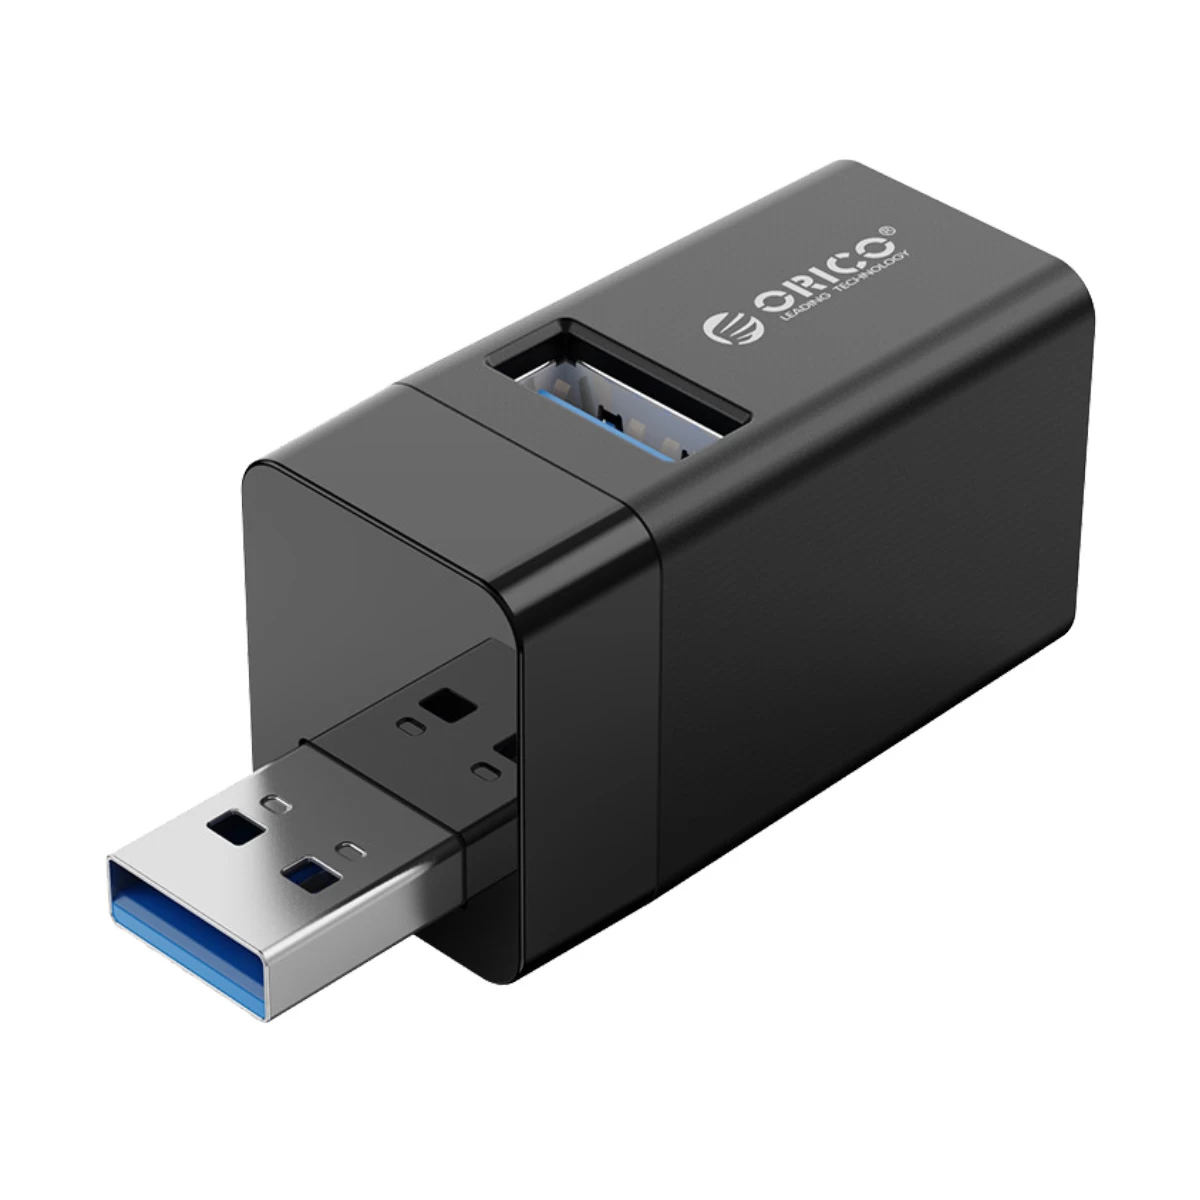 ORICO 3 Port USB 3.0 Mini Hub #MINI U32-BK-BP